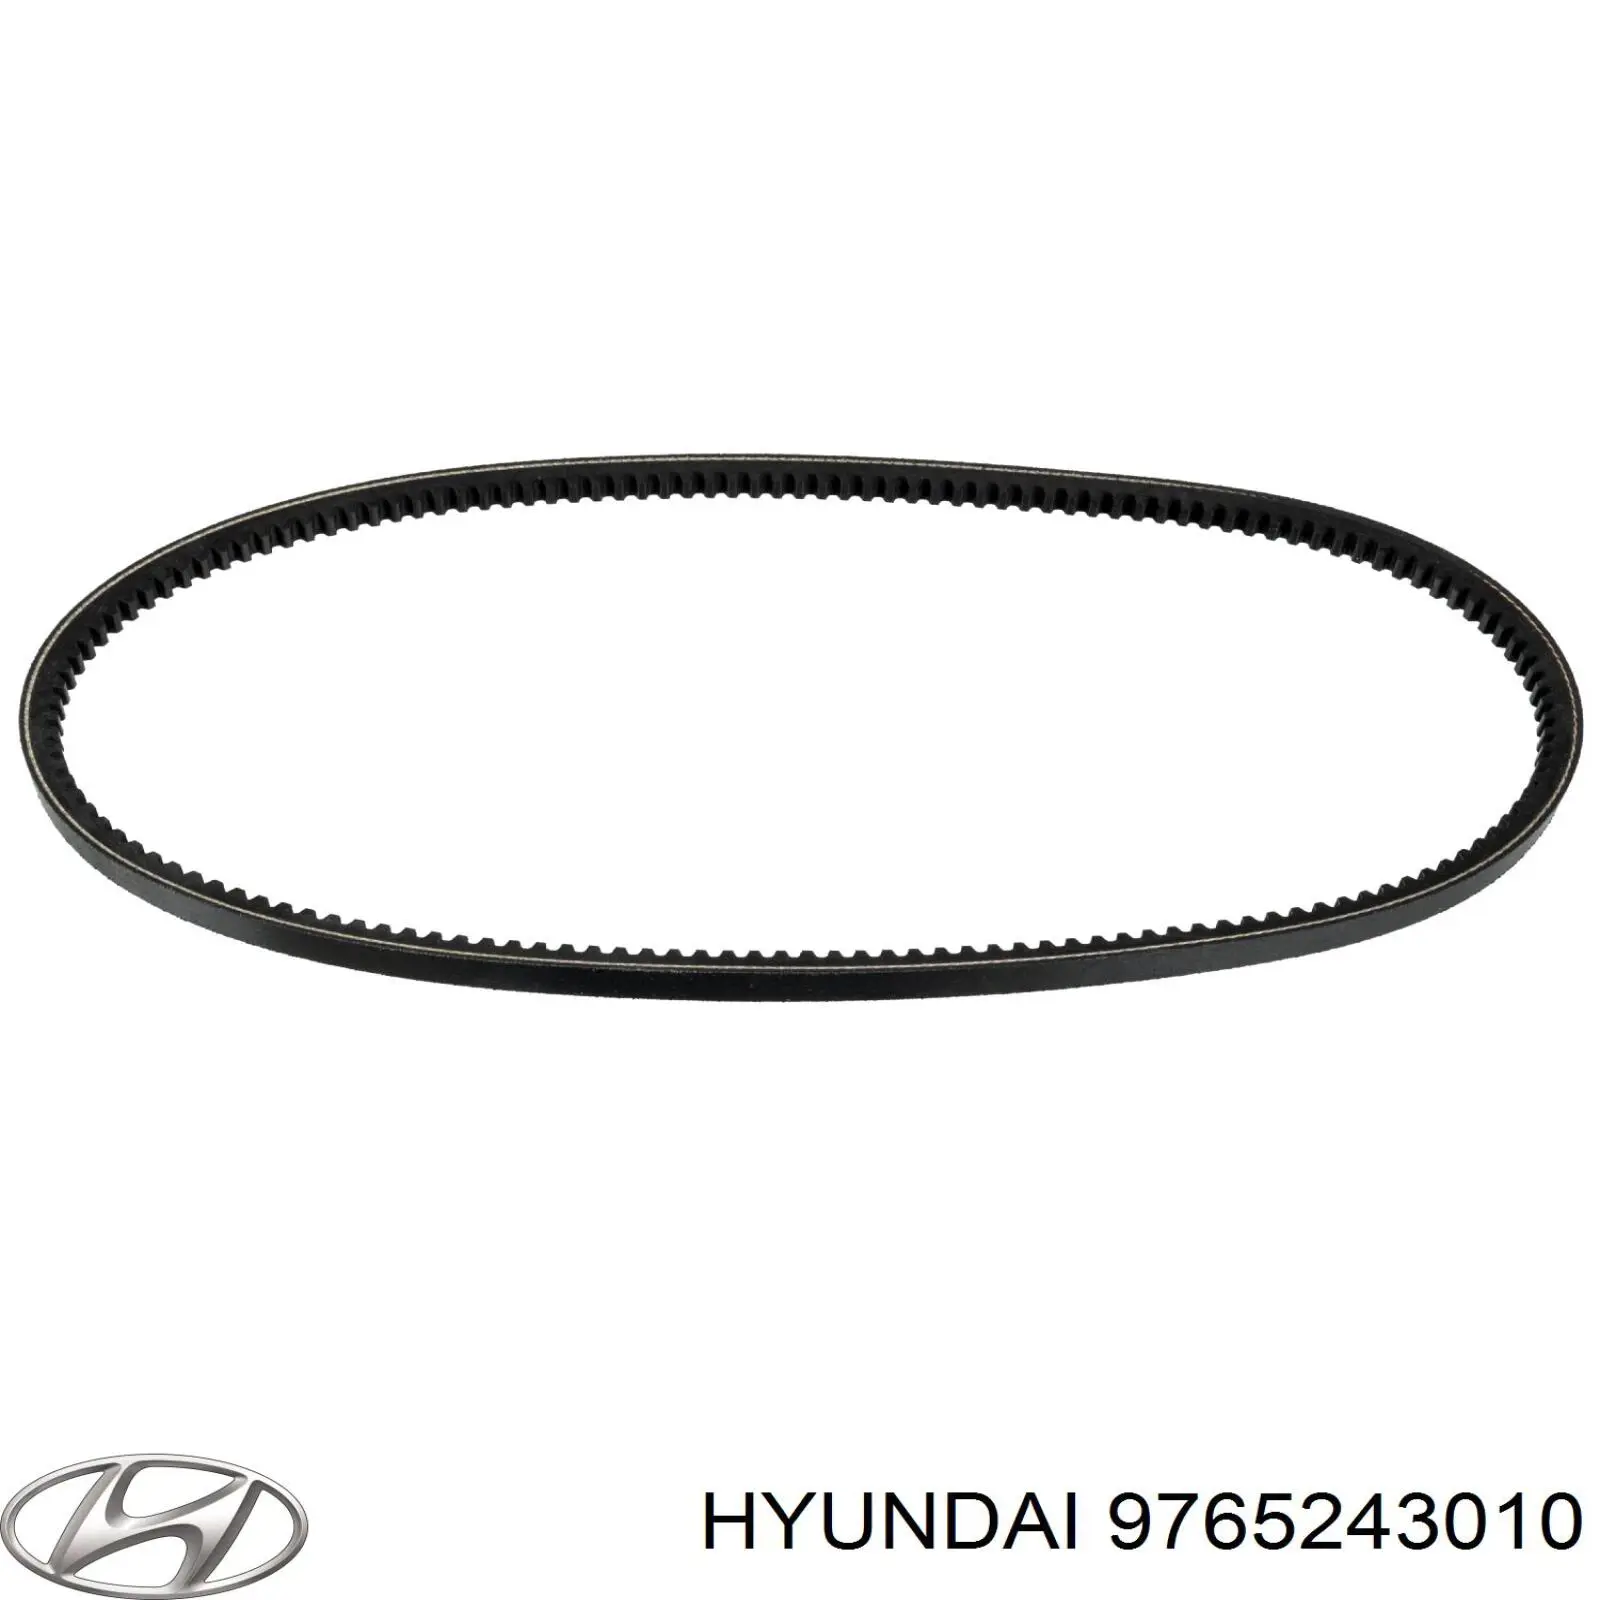 9765243010 Hyundai/Kia correa trapezoidal